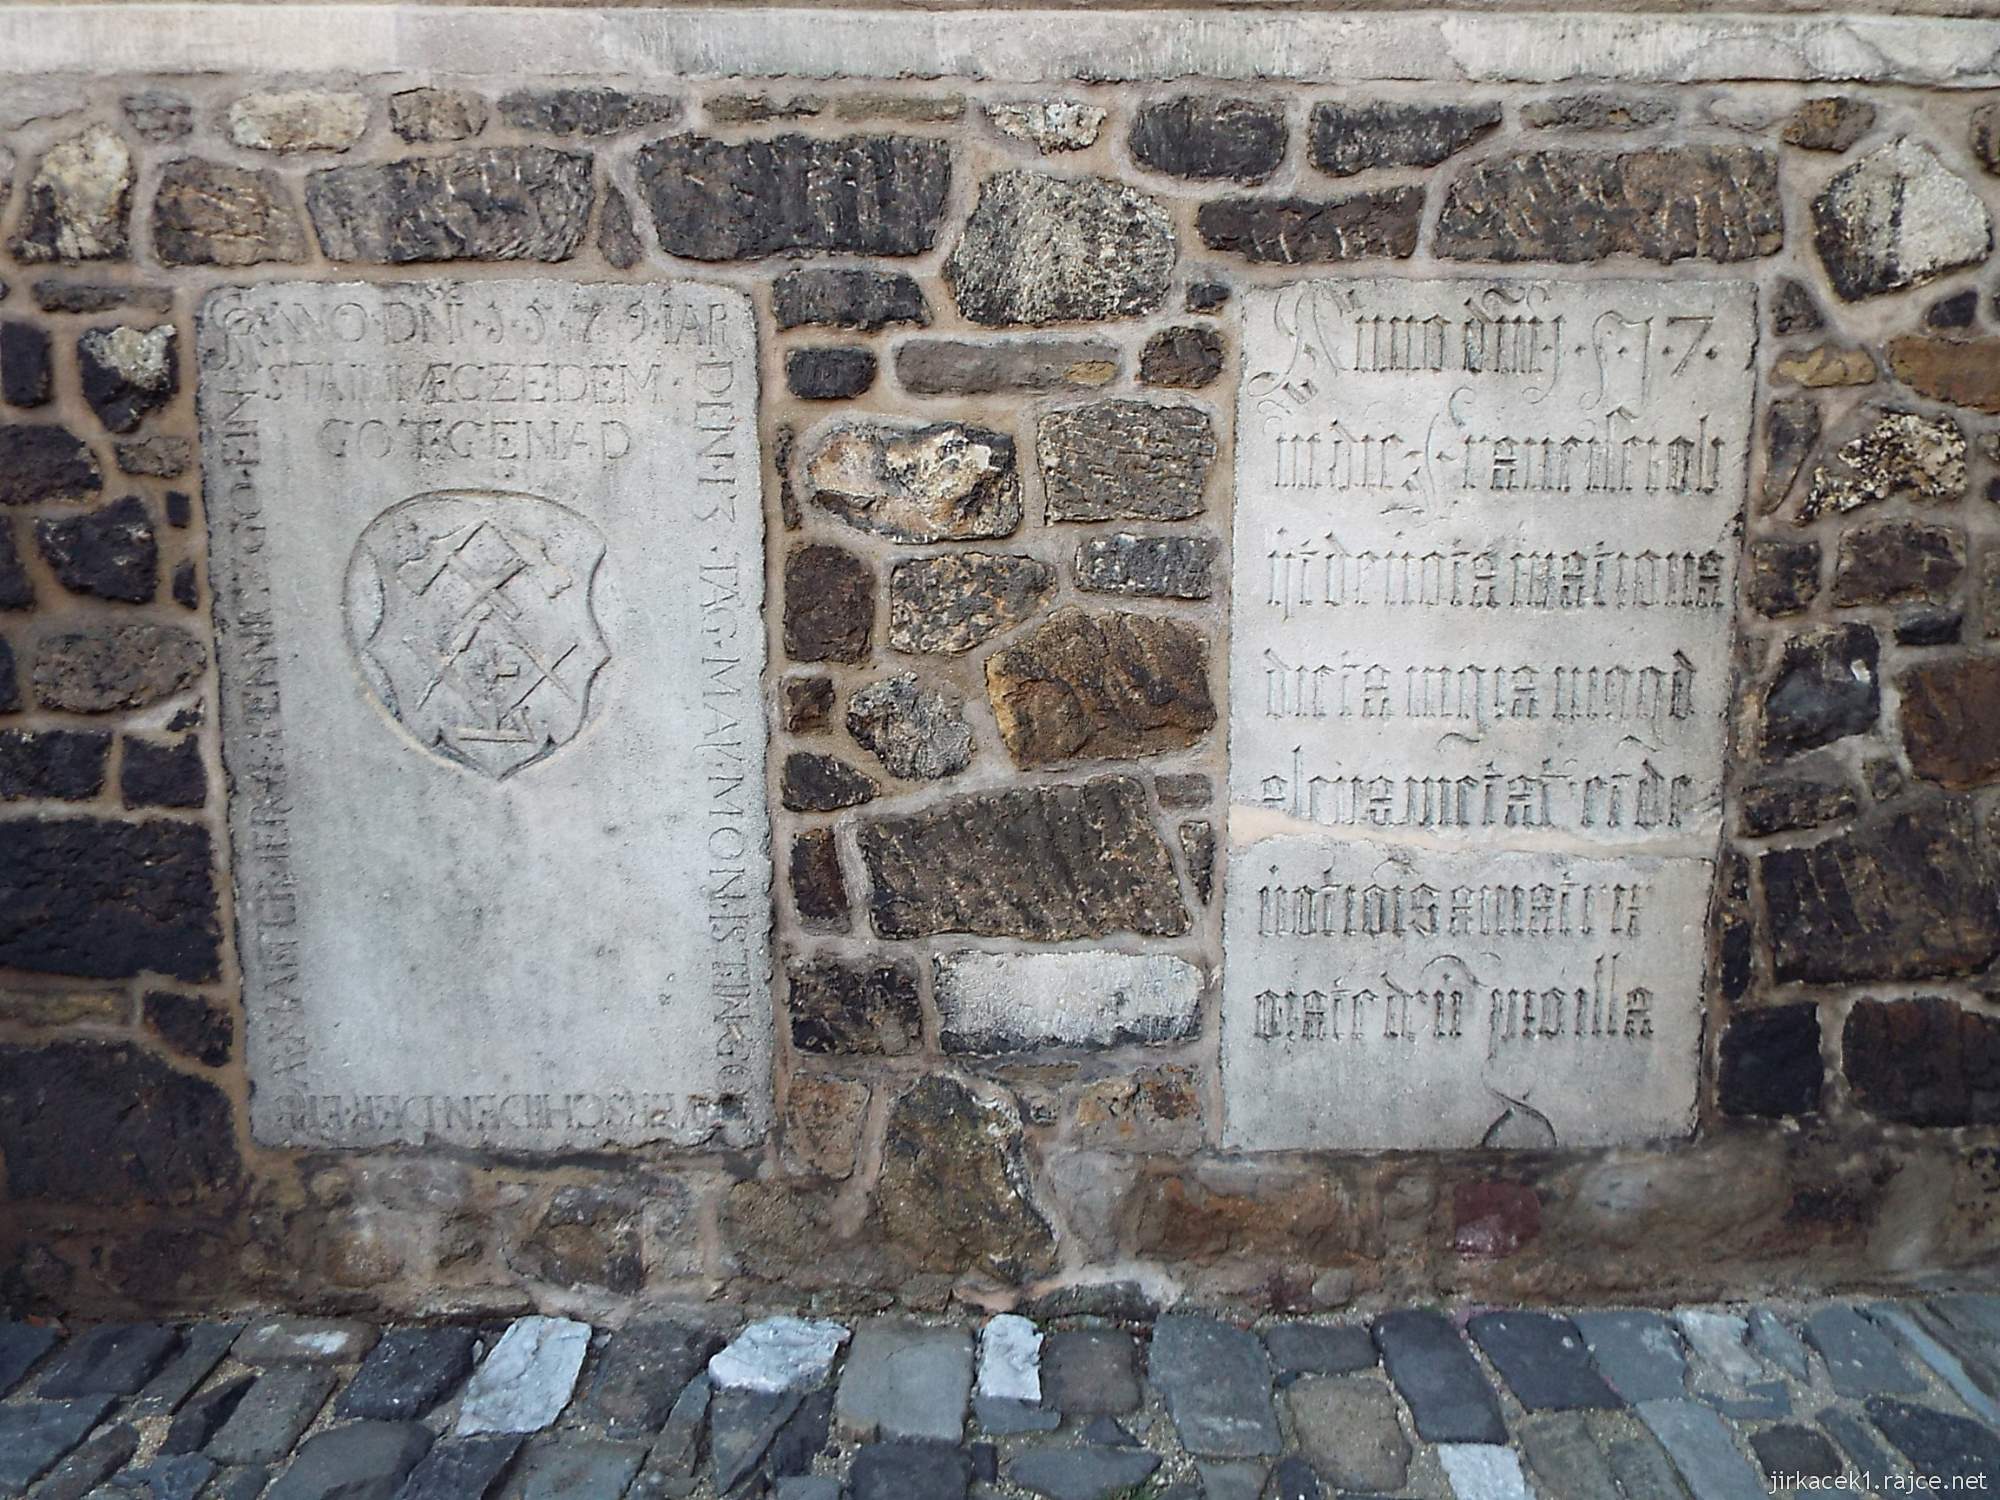 E - Brno - Katedrála sv. Petra a Pavla 37 - náhrobky patronů katedrály ve zdi kostela